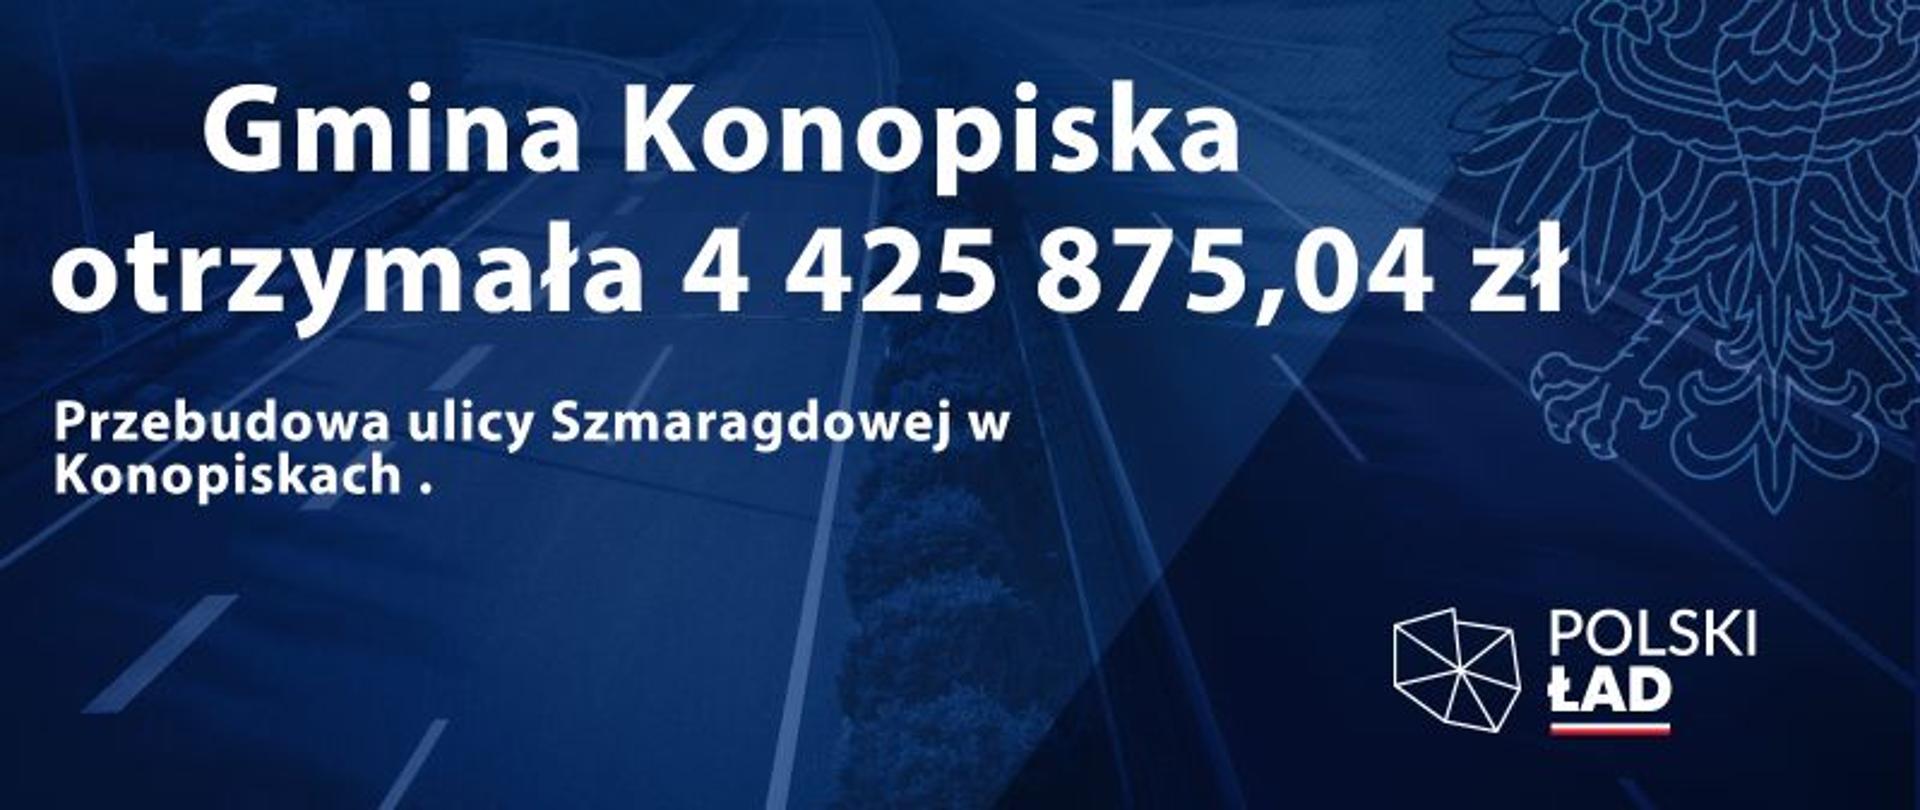 Dofinansowanie na przebudowę ulicy Szmaragdowej w Konopiskach - plakat